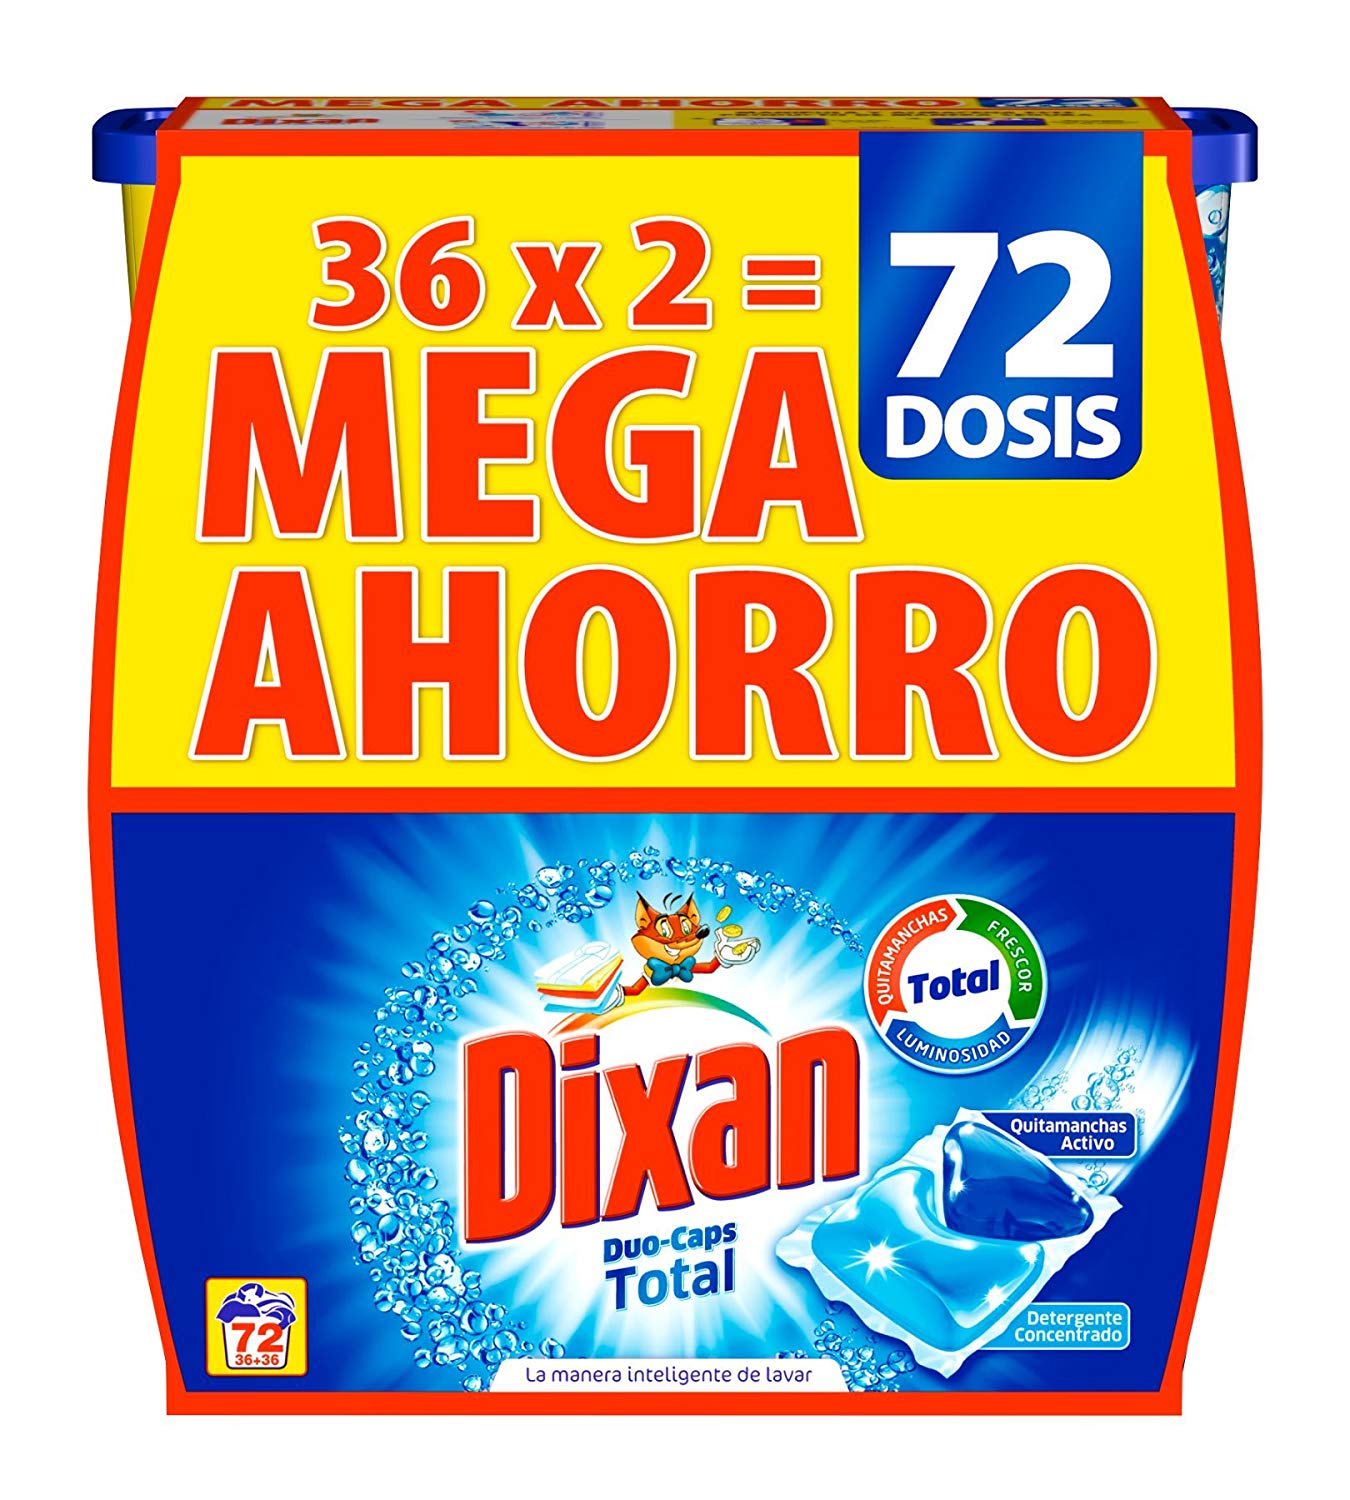 Dixan Detergente en Cápsulas 72 lavados solo 11,9€